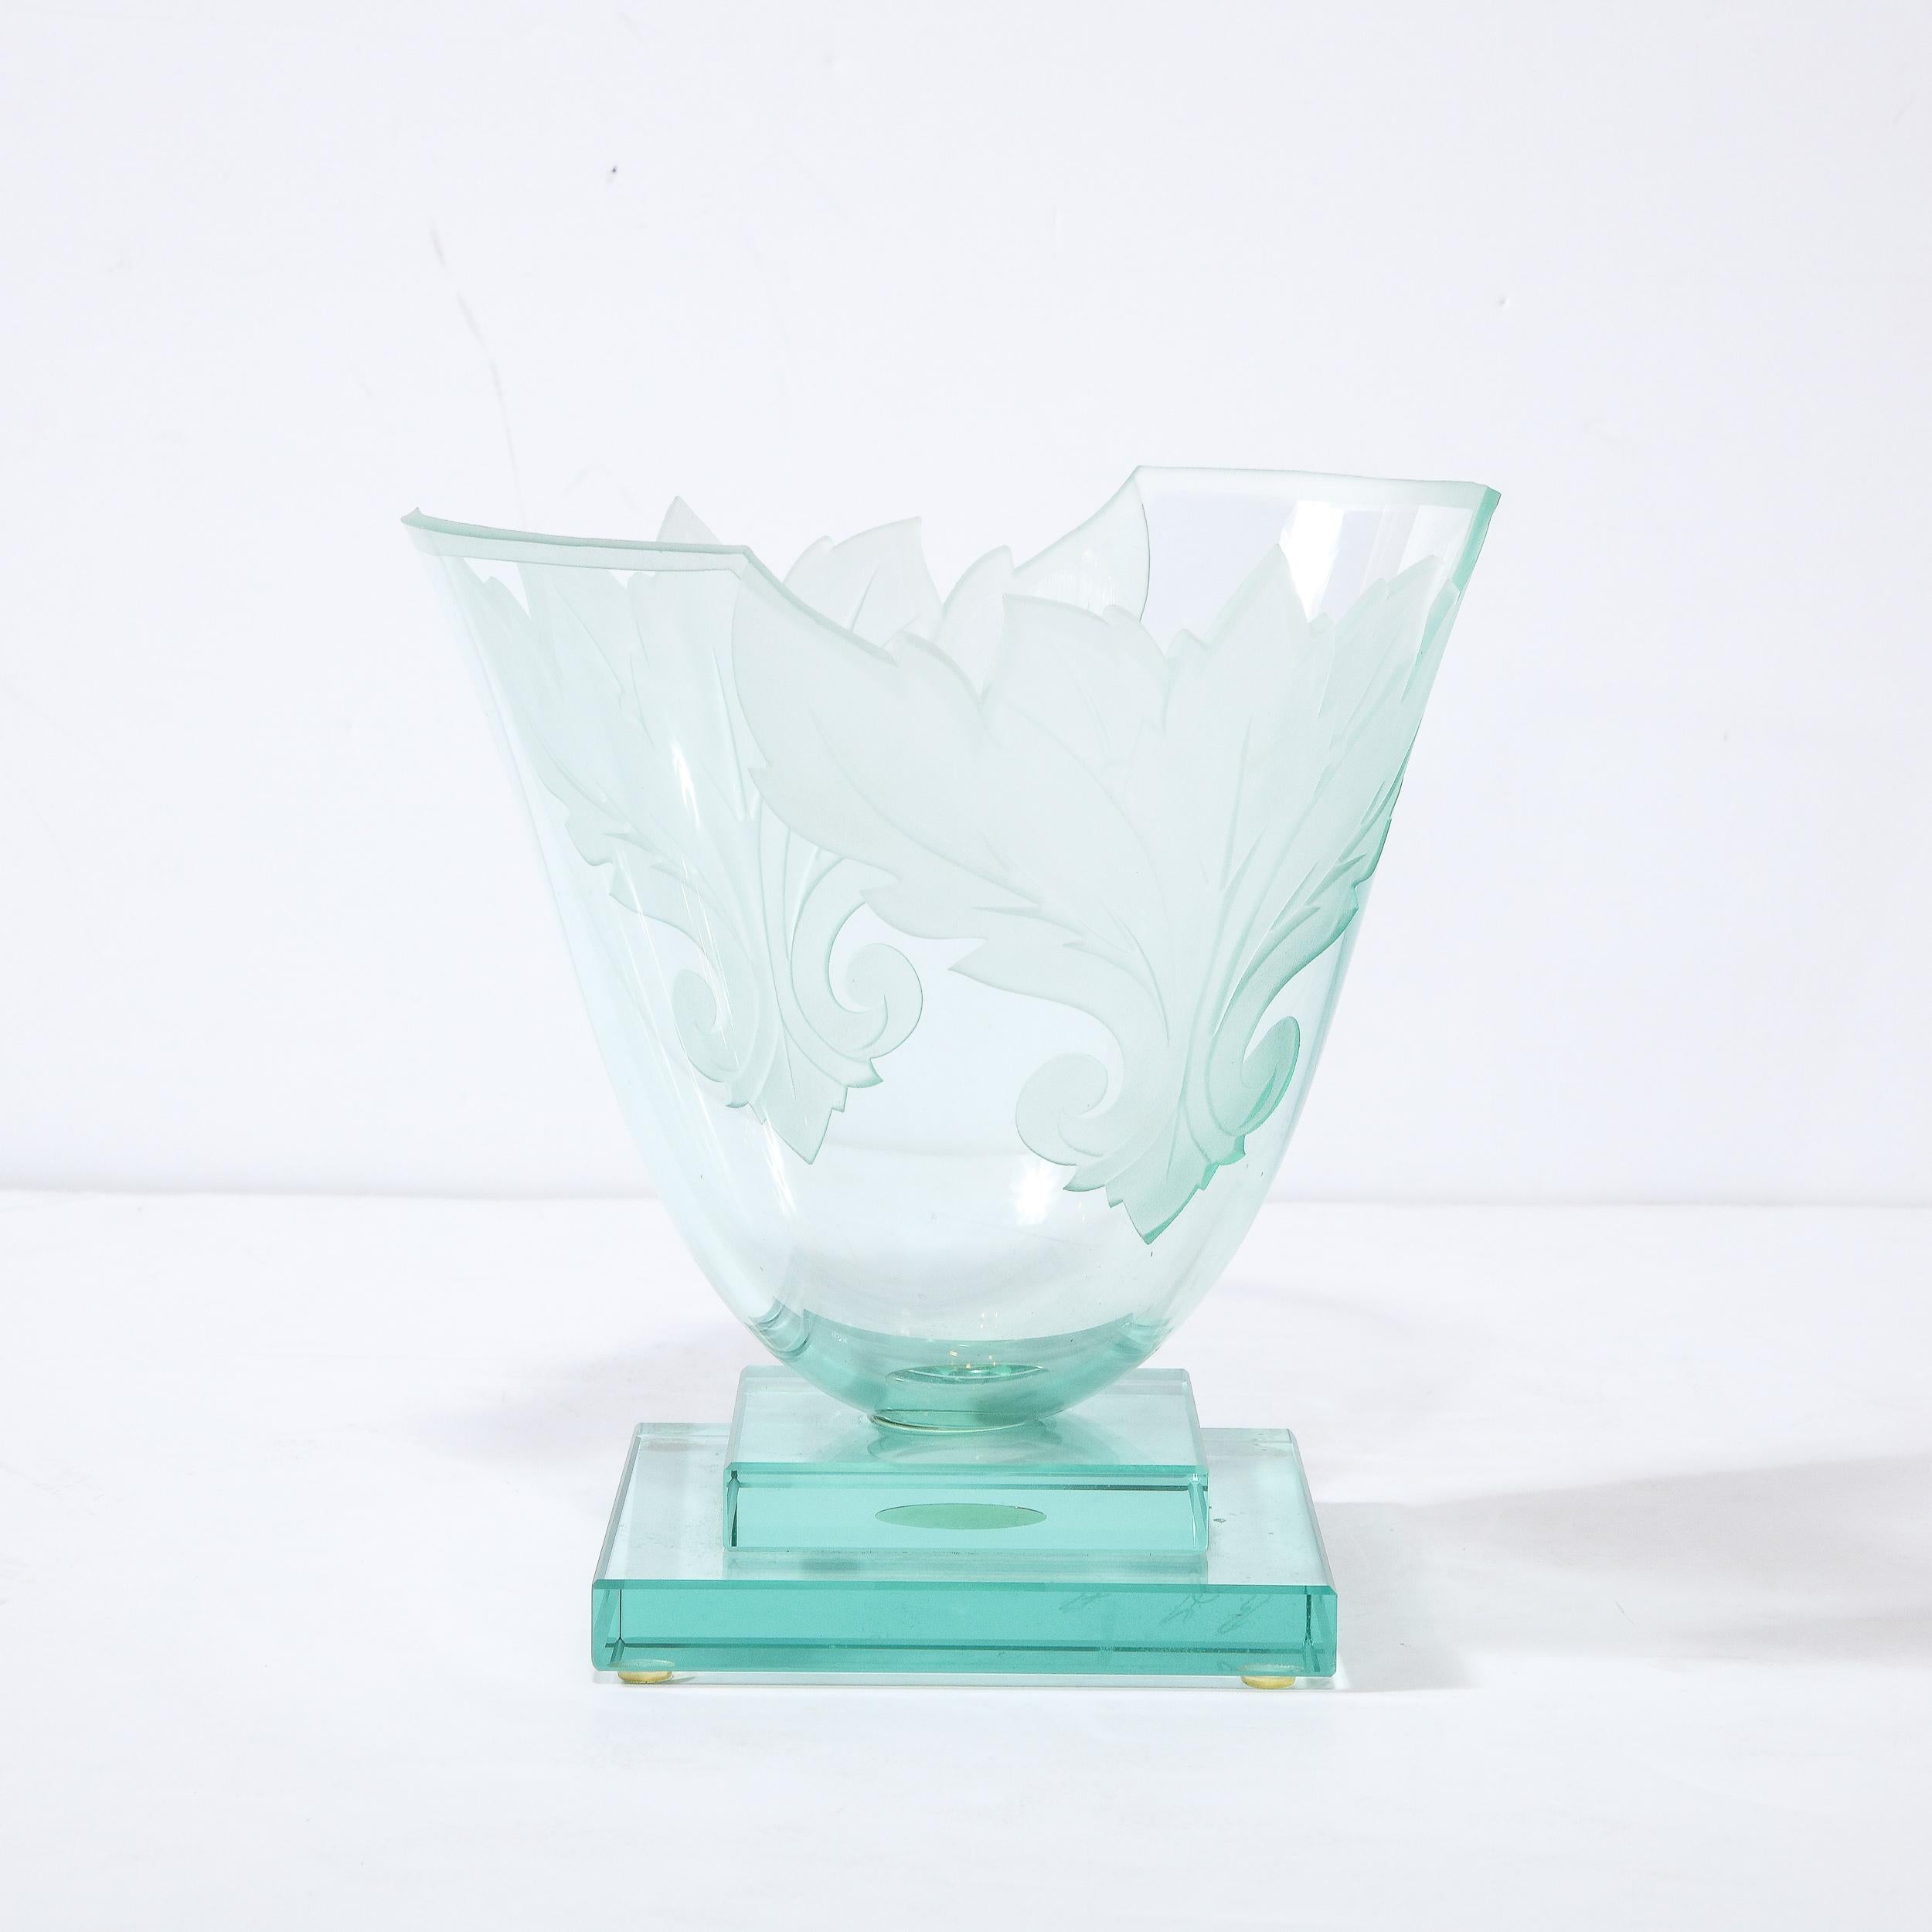 Diese atemberaubende modernistische Vase wurde von dem geschätzten Kunsthandwerker Robert Guenter um 1990 in den Vereinigten Staaten hergestellt. Die geometrische Basis im Stil eines Wolkenkratzers besteht aus übereinander gestapelten geradlinigen